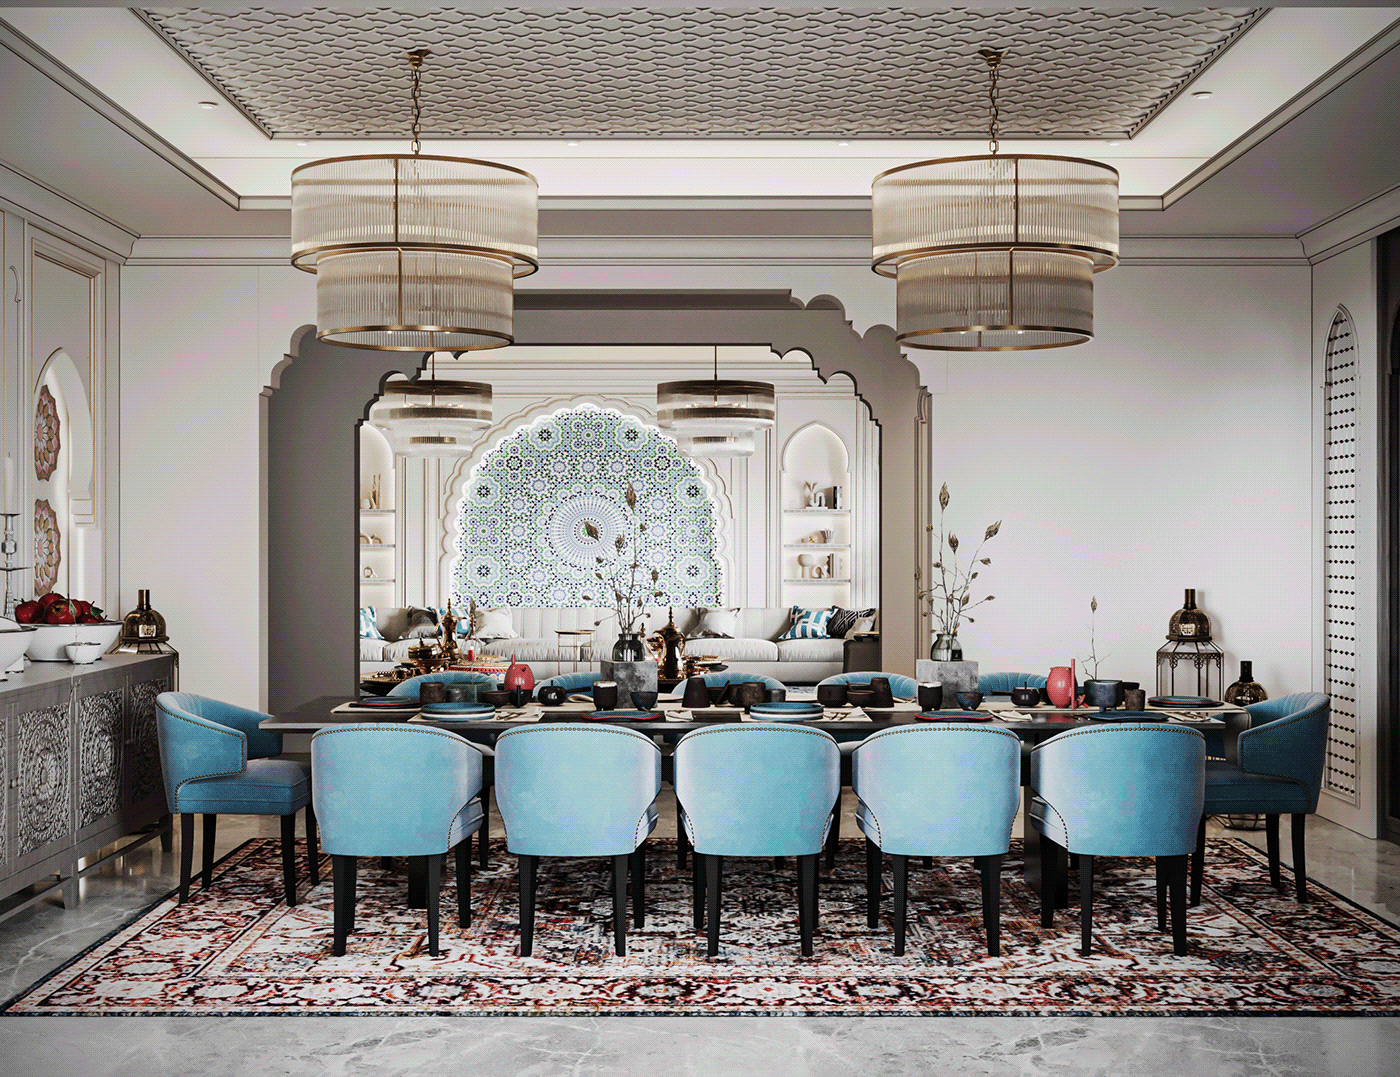 Morocco interior design  Interior living room architecture archviz visualization 3ds max corona Moroccan